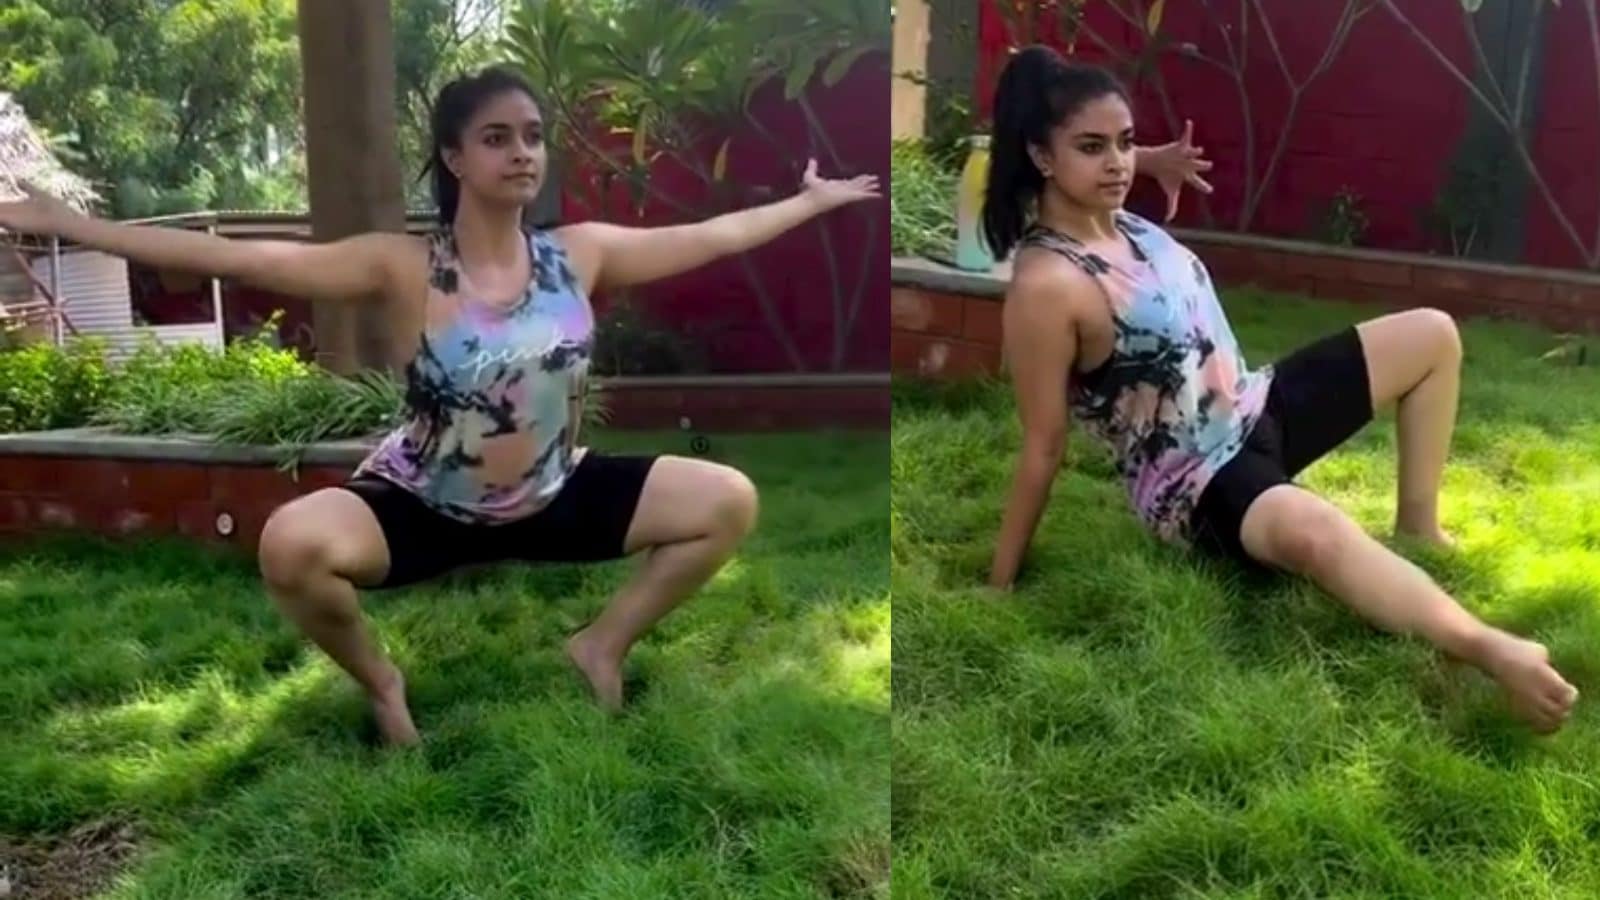 టాలీవుడ్ నటి కీర్తిసురేష్ యోగా ఆసనాలు వేస్తున్న వీడియో వైరల్ | tollywood  actress keerthy suresh doing yoga asanas video has gone viral– News18 Telugu